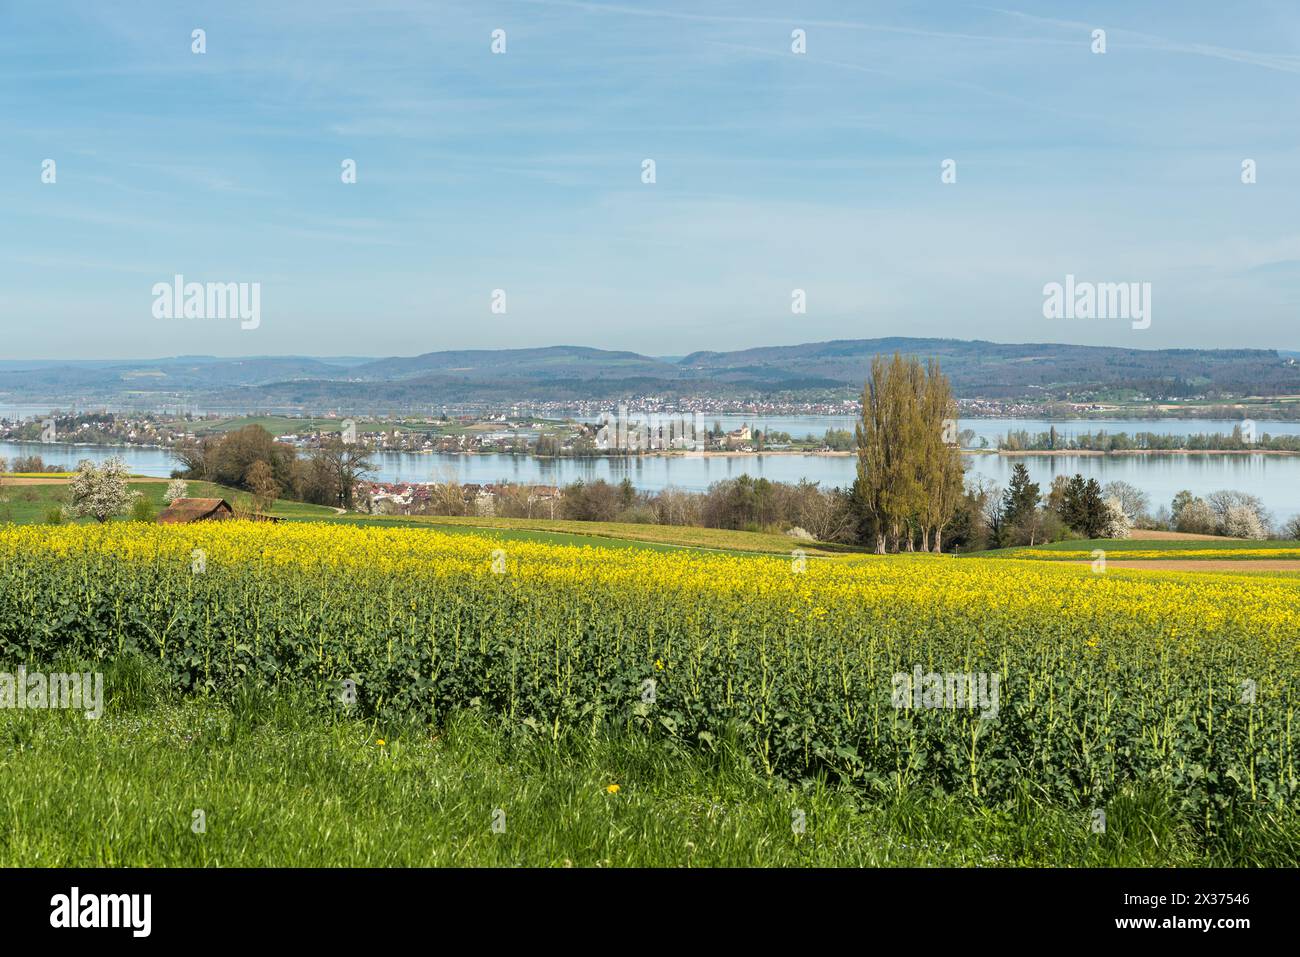 Paesaggio primaverile sul lago di Costanza, campo di canola in fiore con vista sull'isola di Reichenau, Ermatingen, Canton Thurgau, Svizzera Foto Stock